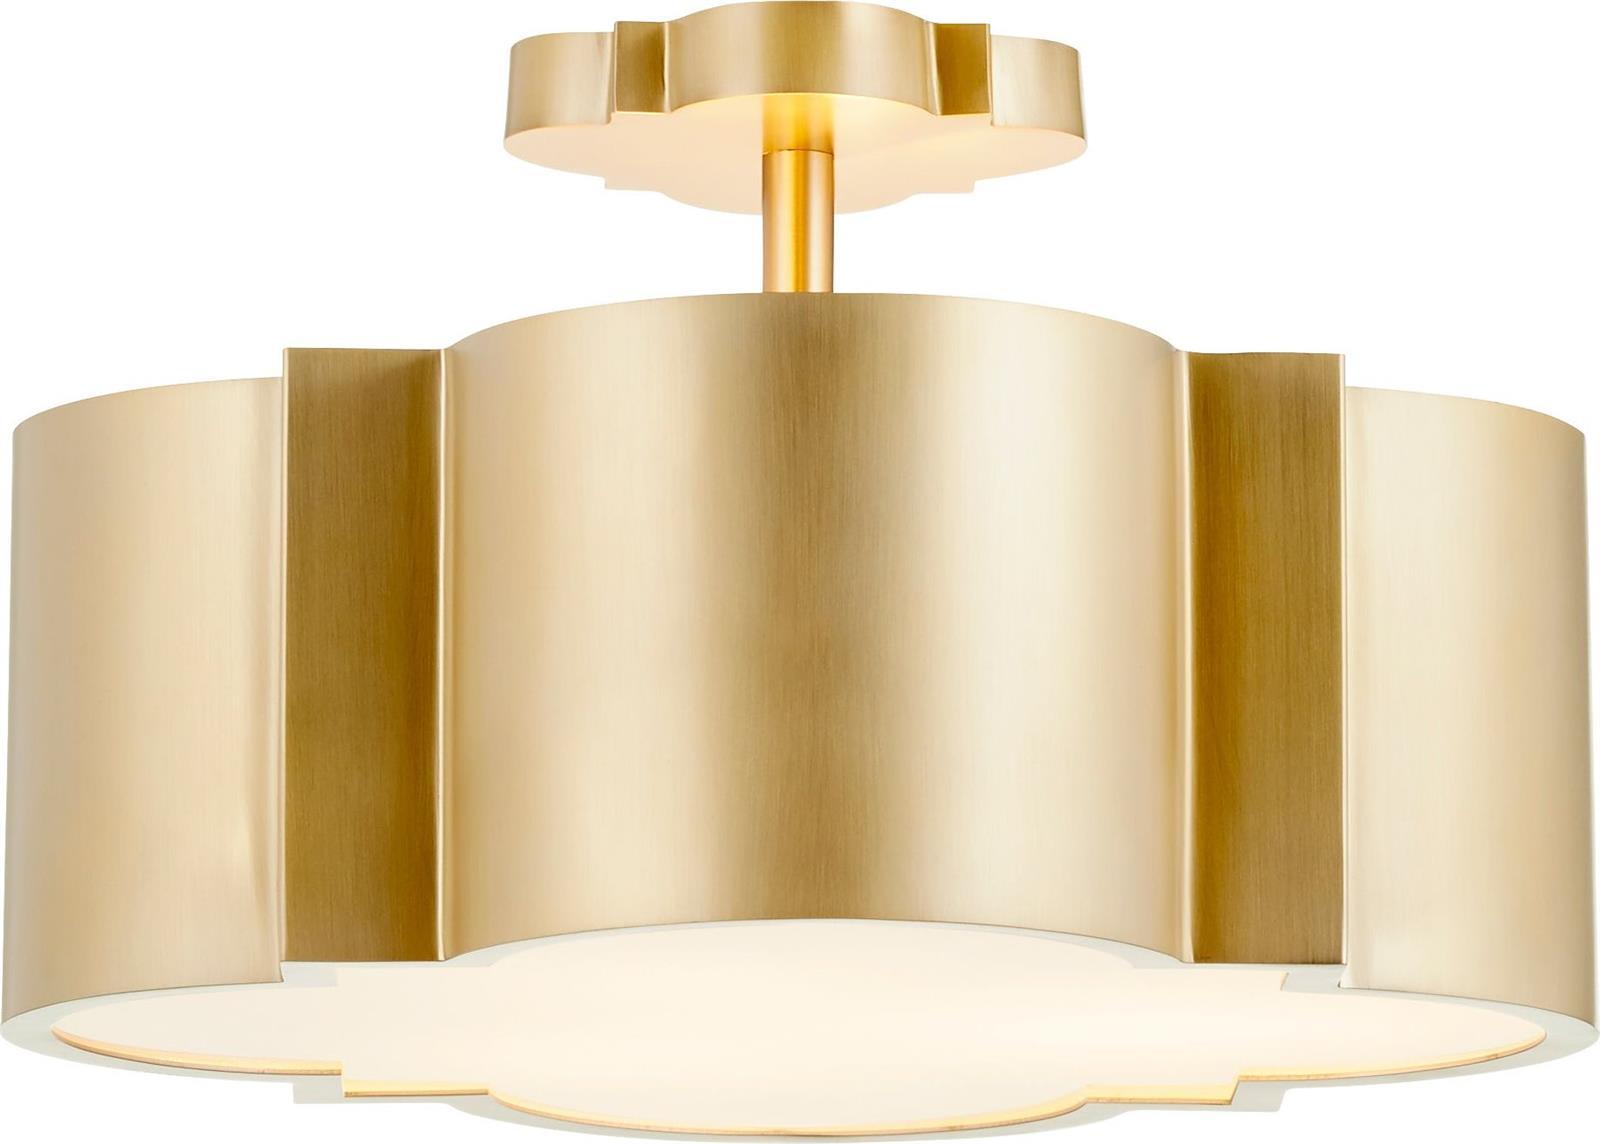 Chandelier CYAN DESIGN 3-Light Aged Brass Opal Glass Shade Medium E26 60W-Image 1